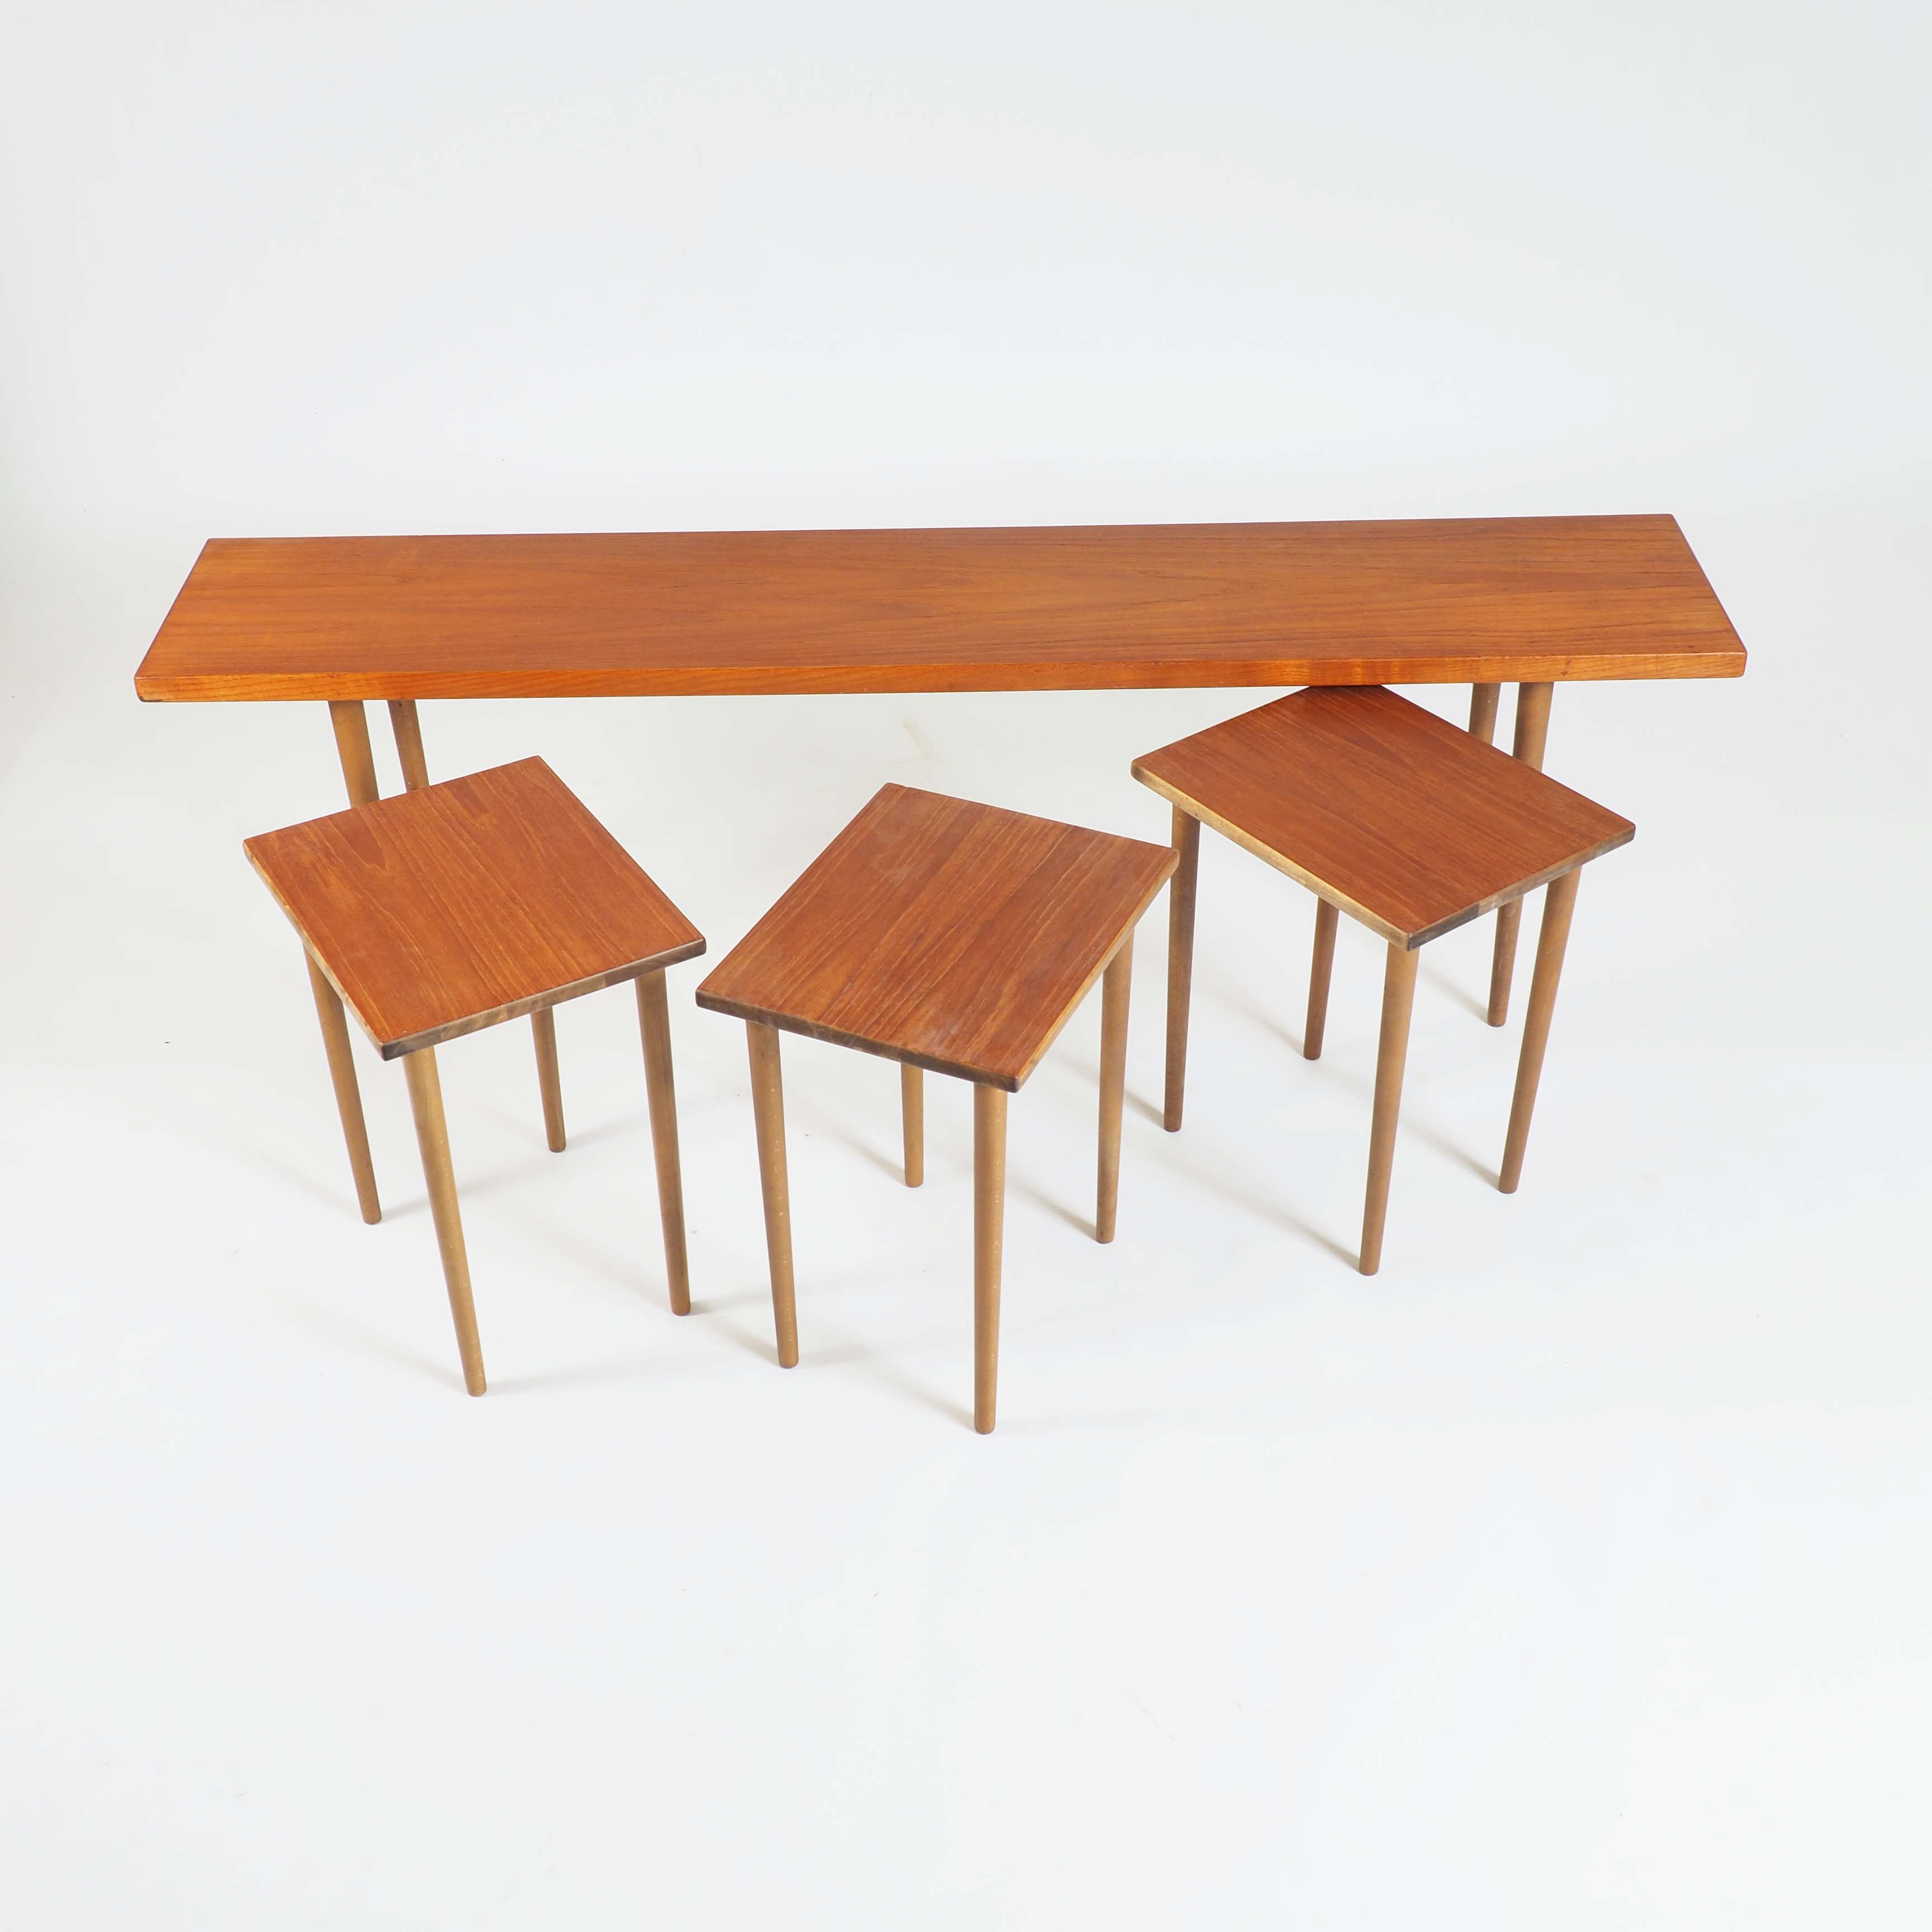 Nesting Tables in Teak Designed by Kurt Østervig for Jason, Denmark